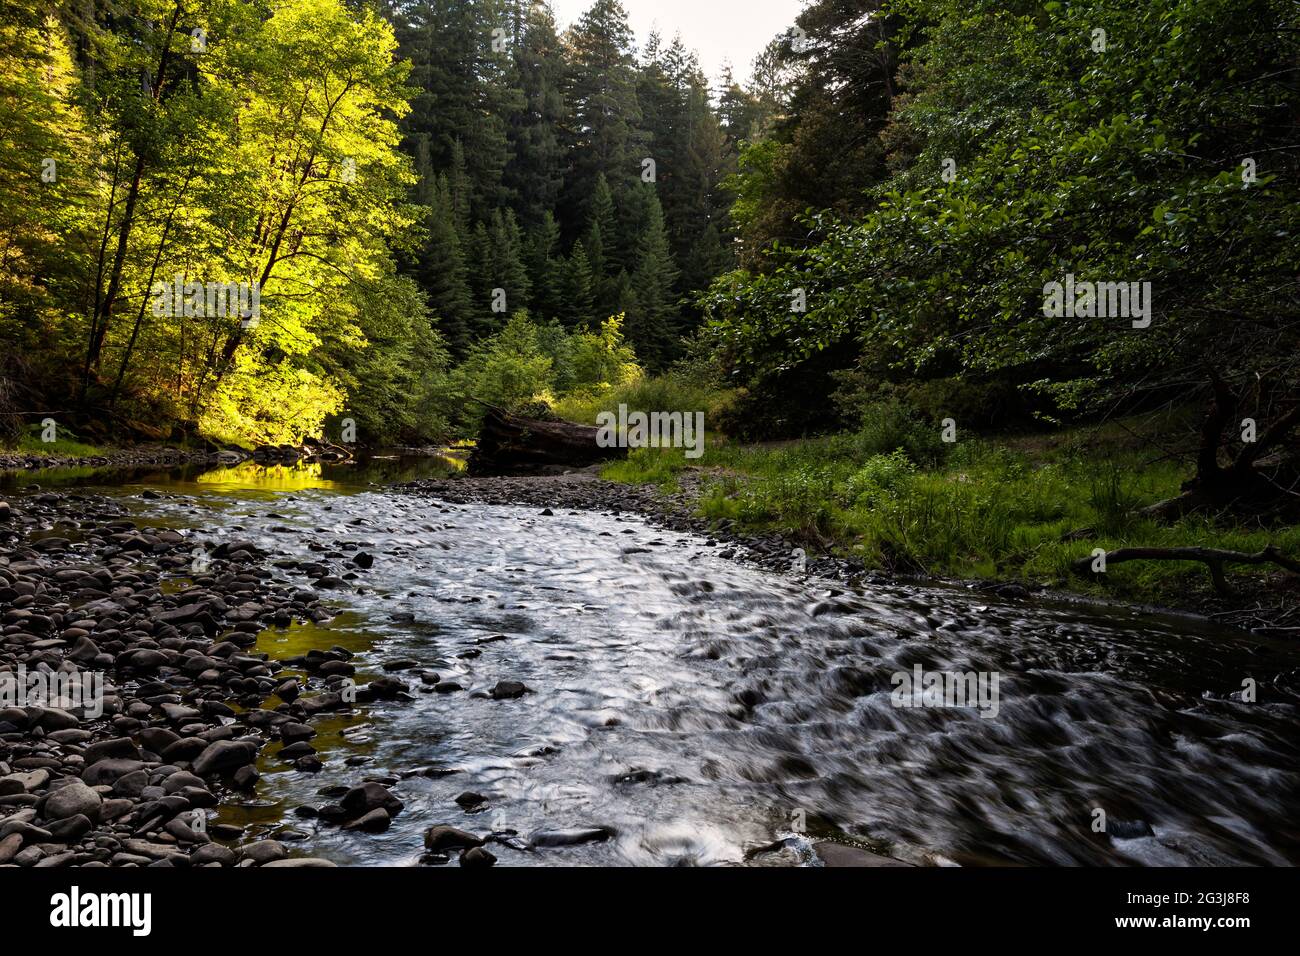 Bull Creek coule dans le parc national Humboldt Redwoods, dans le nord de la Californie. Banque D'Images